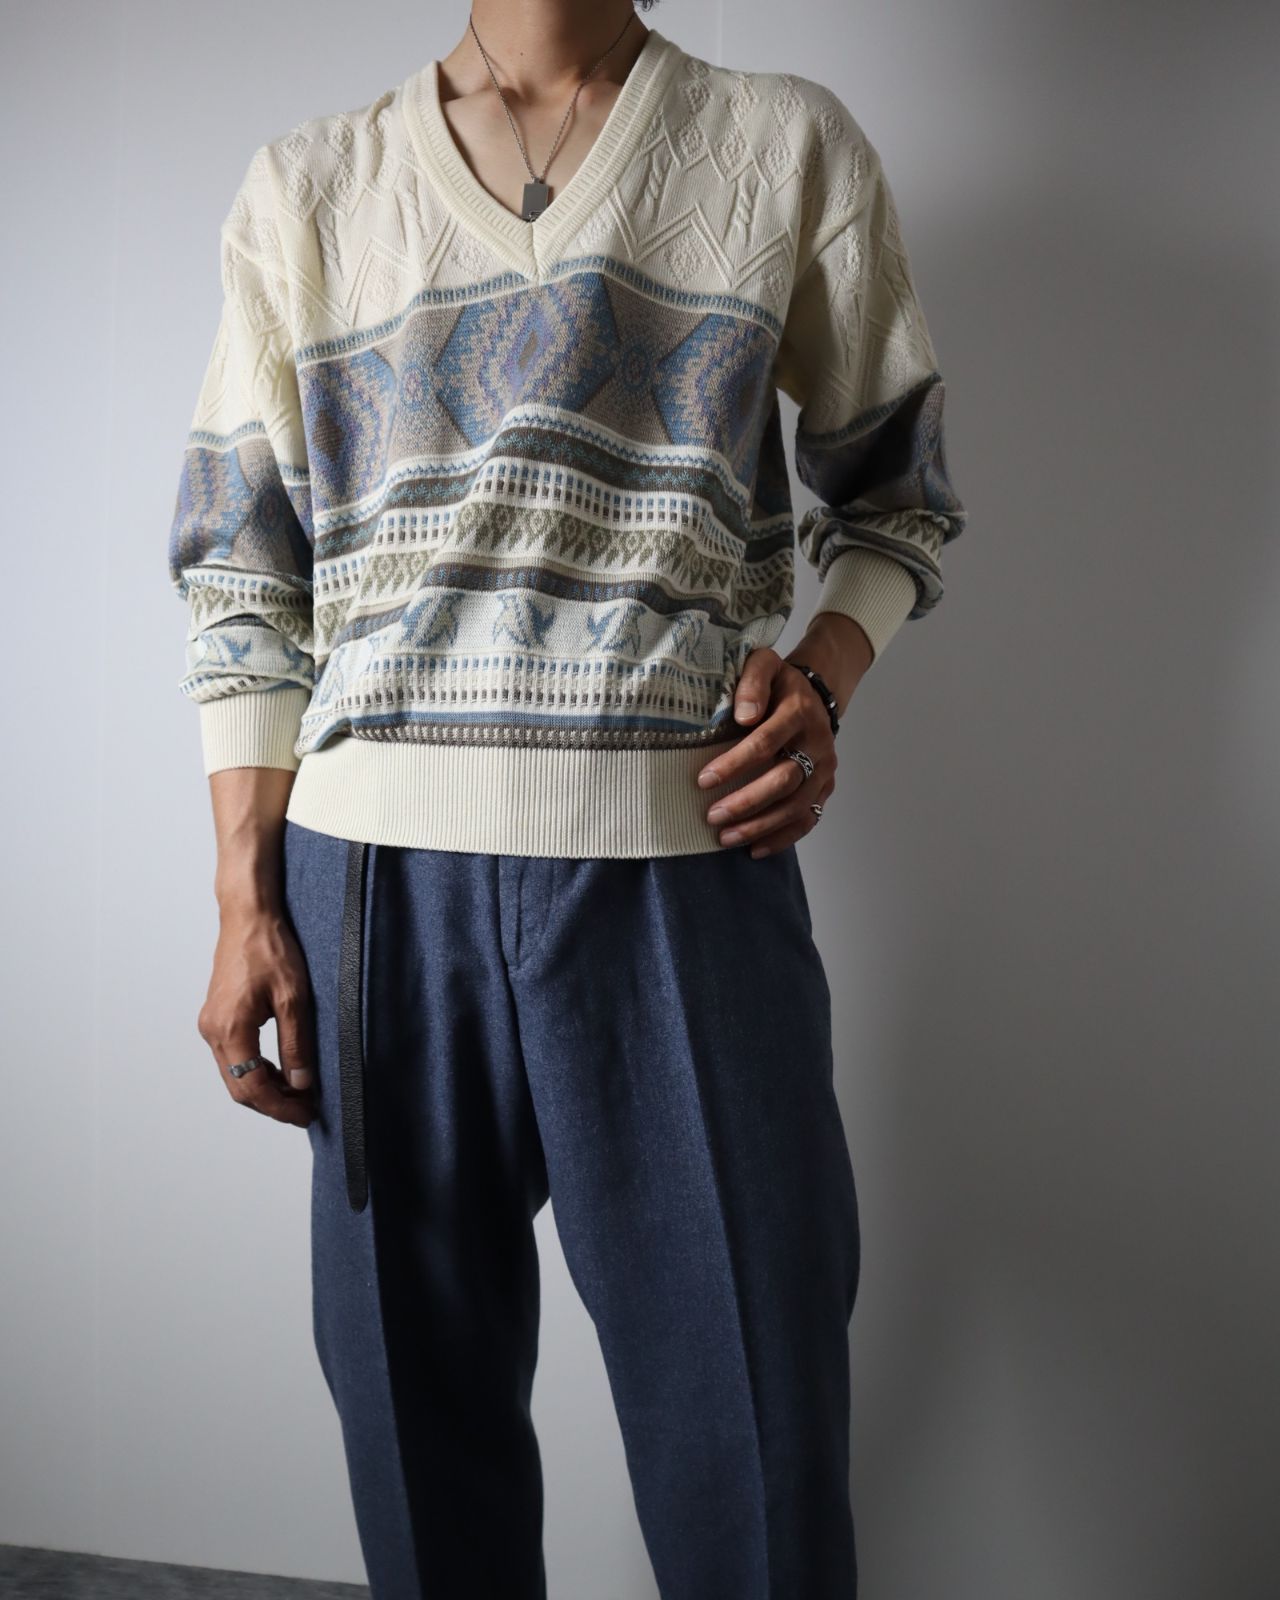 ARAMIS】オルテガ調 透かし編み デザイン コットン混 ニット セーター